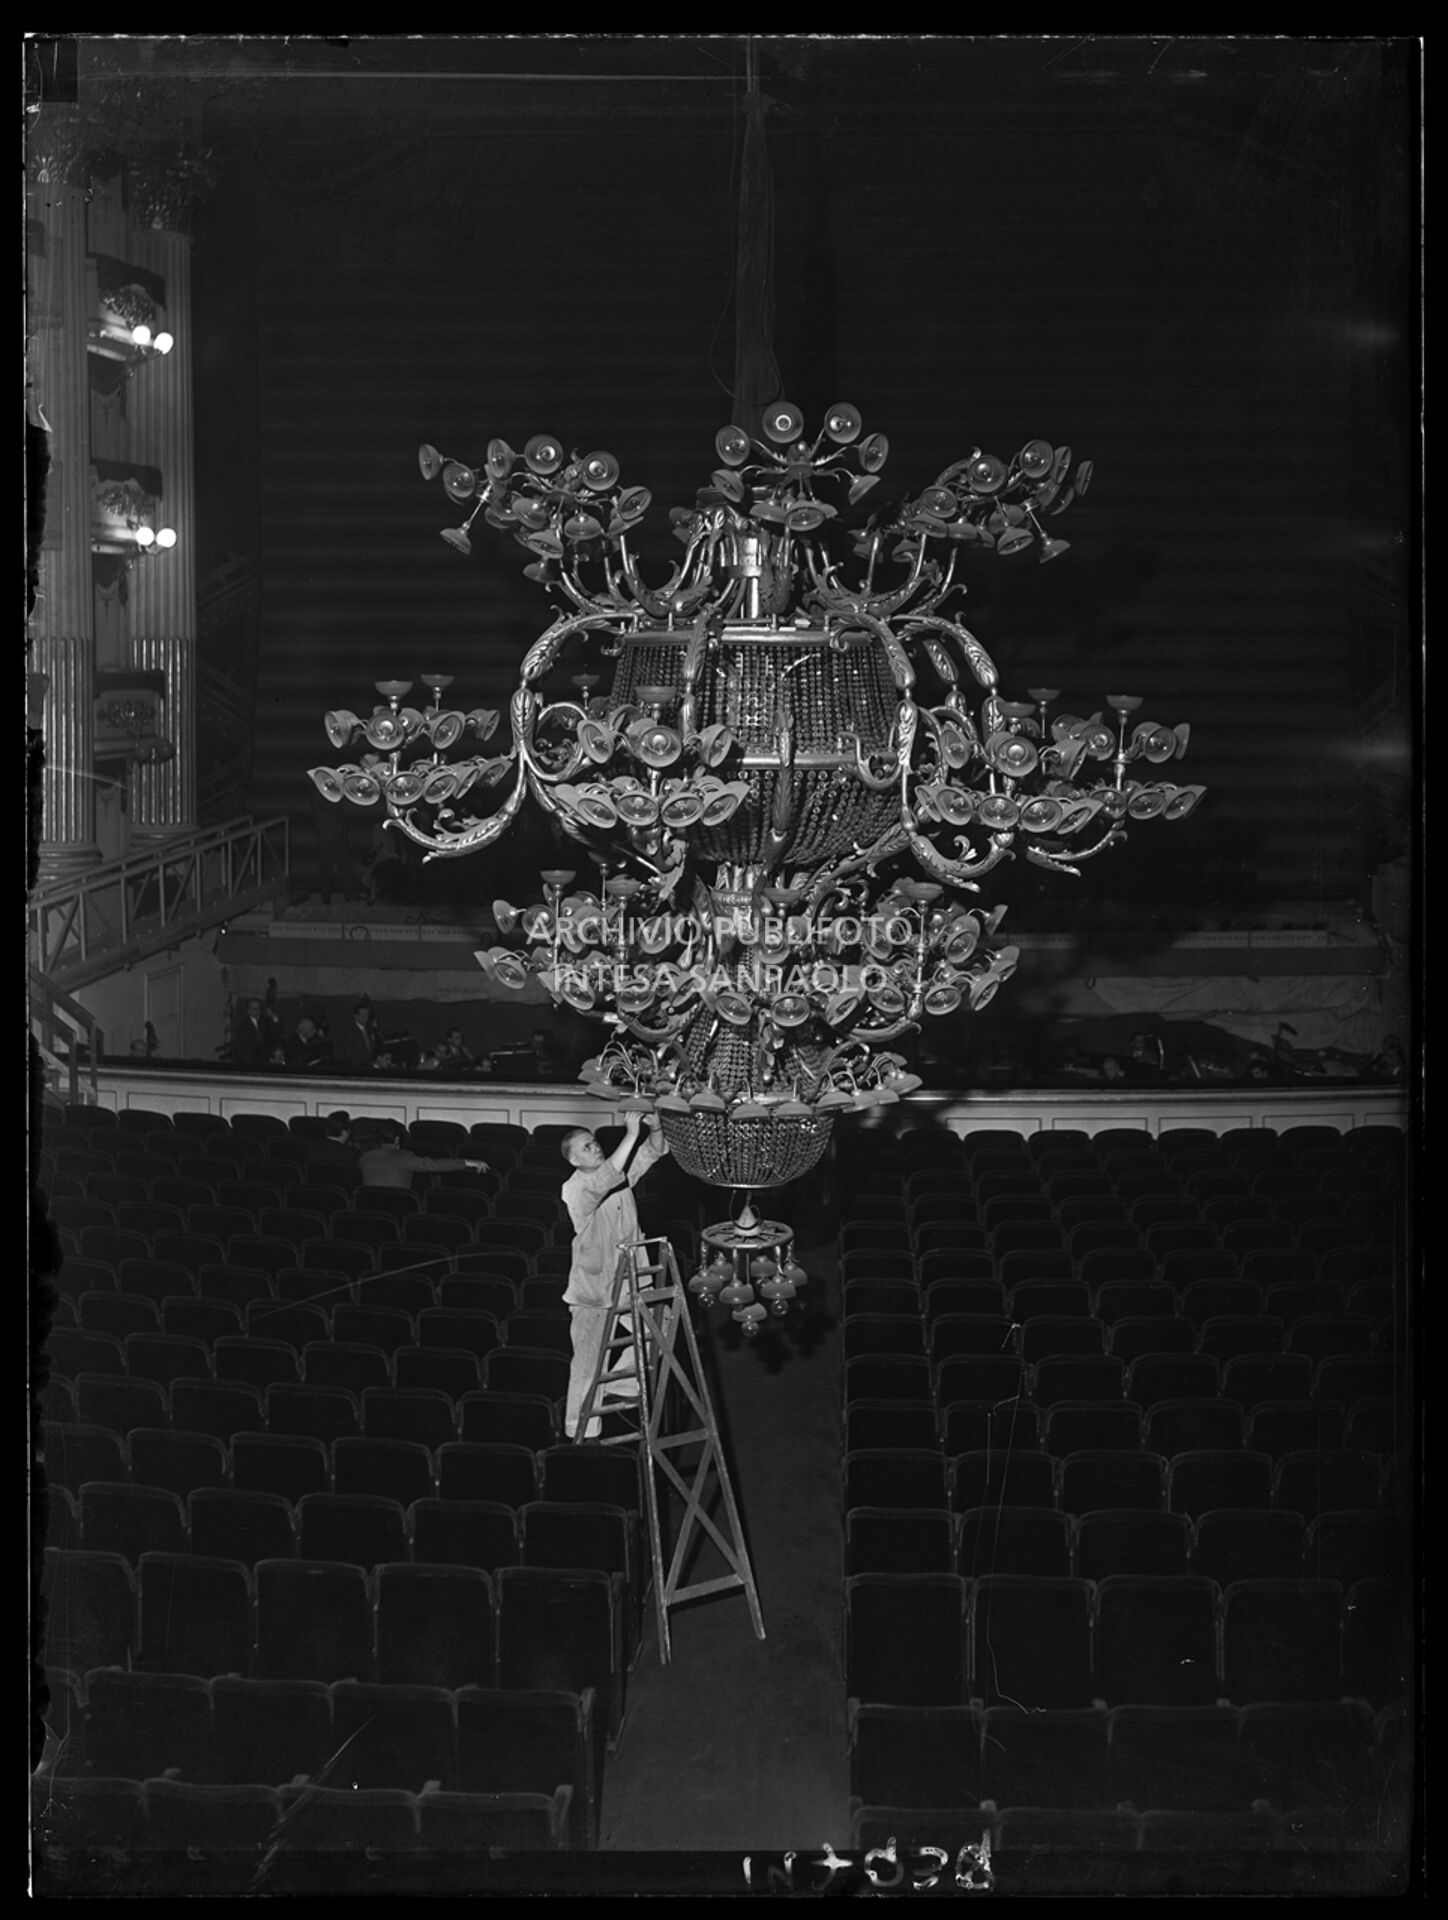 Pulizia del lampadario del Teatro alla Scala in vista dell'inaugurazione della stagione lirica 1952-1953